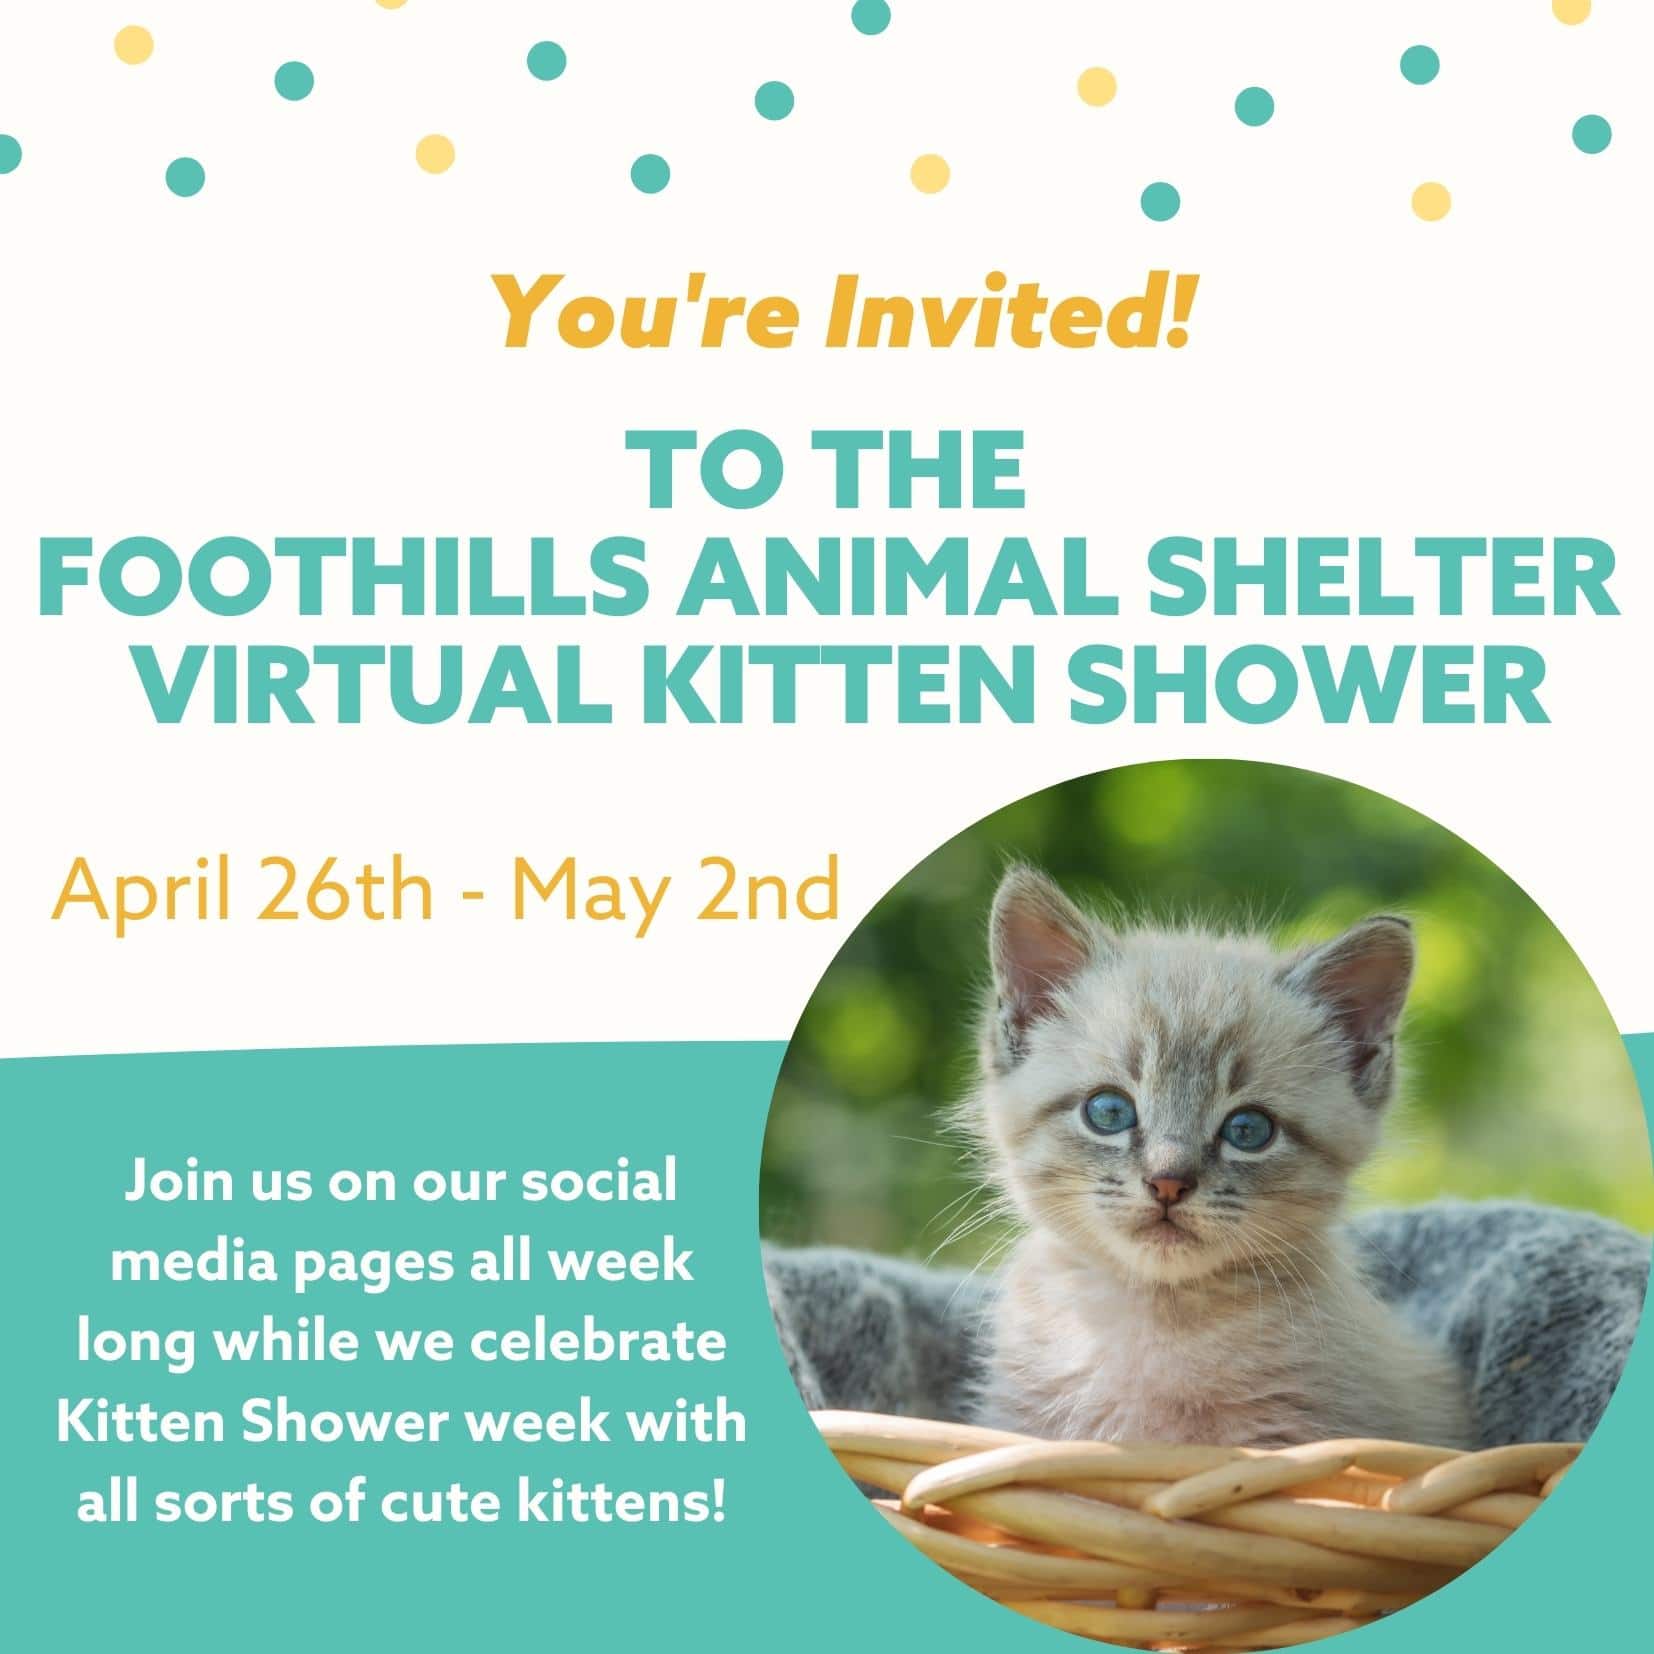 Virtual Kitten Shower - Foothills Animal Shelter